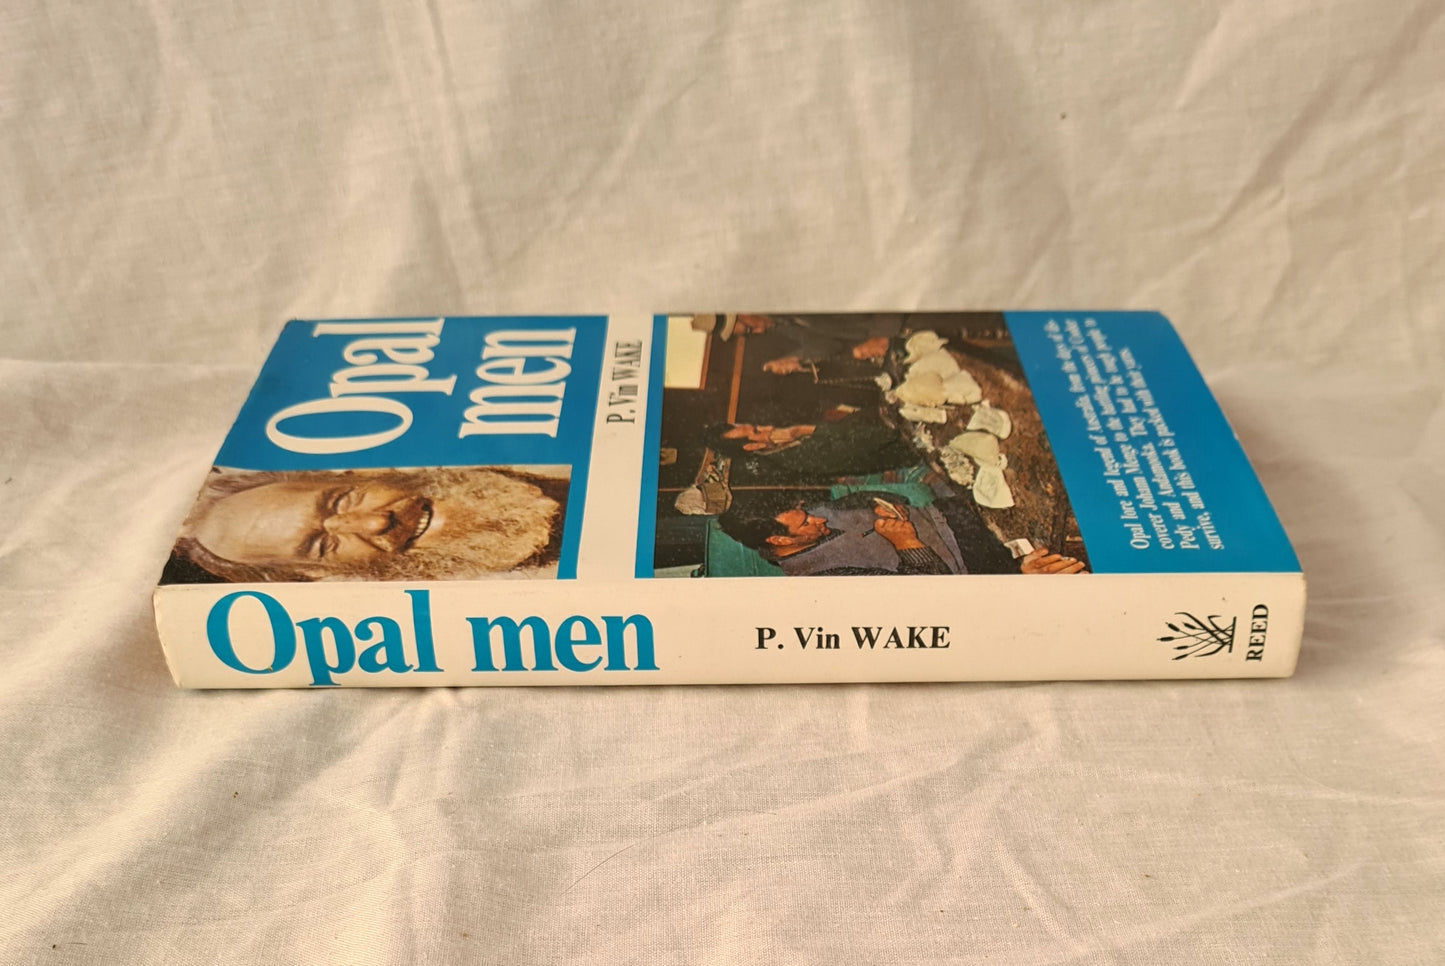 Opal Men by P. Vin Wake